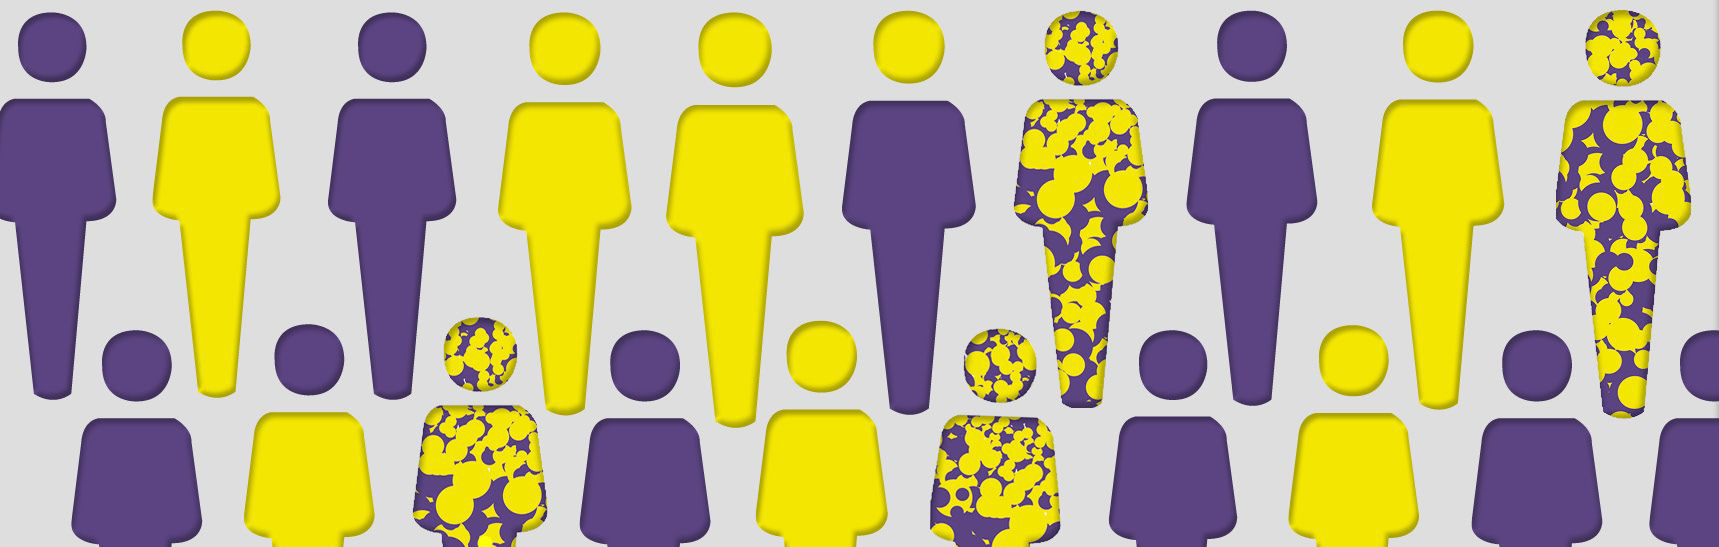 Darstellung von vielen Personen in den Farben lila, gelb sowie auch lila-gelb und nur lila bzw. gelben Kopf und gelben bzw. lila Körper